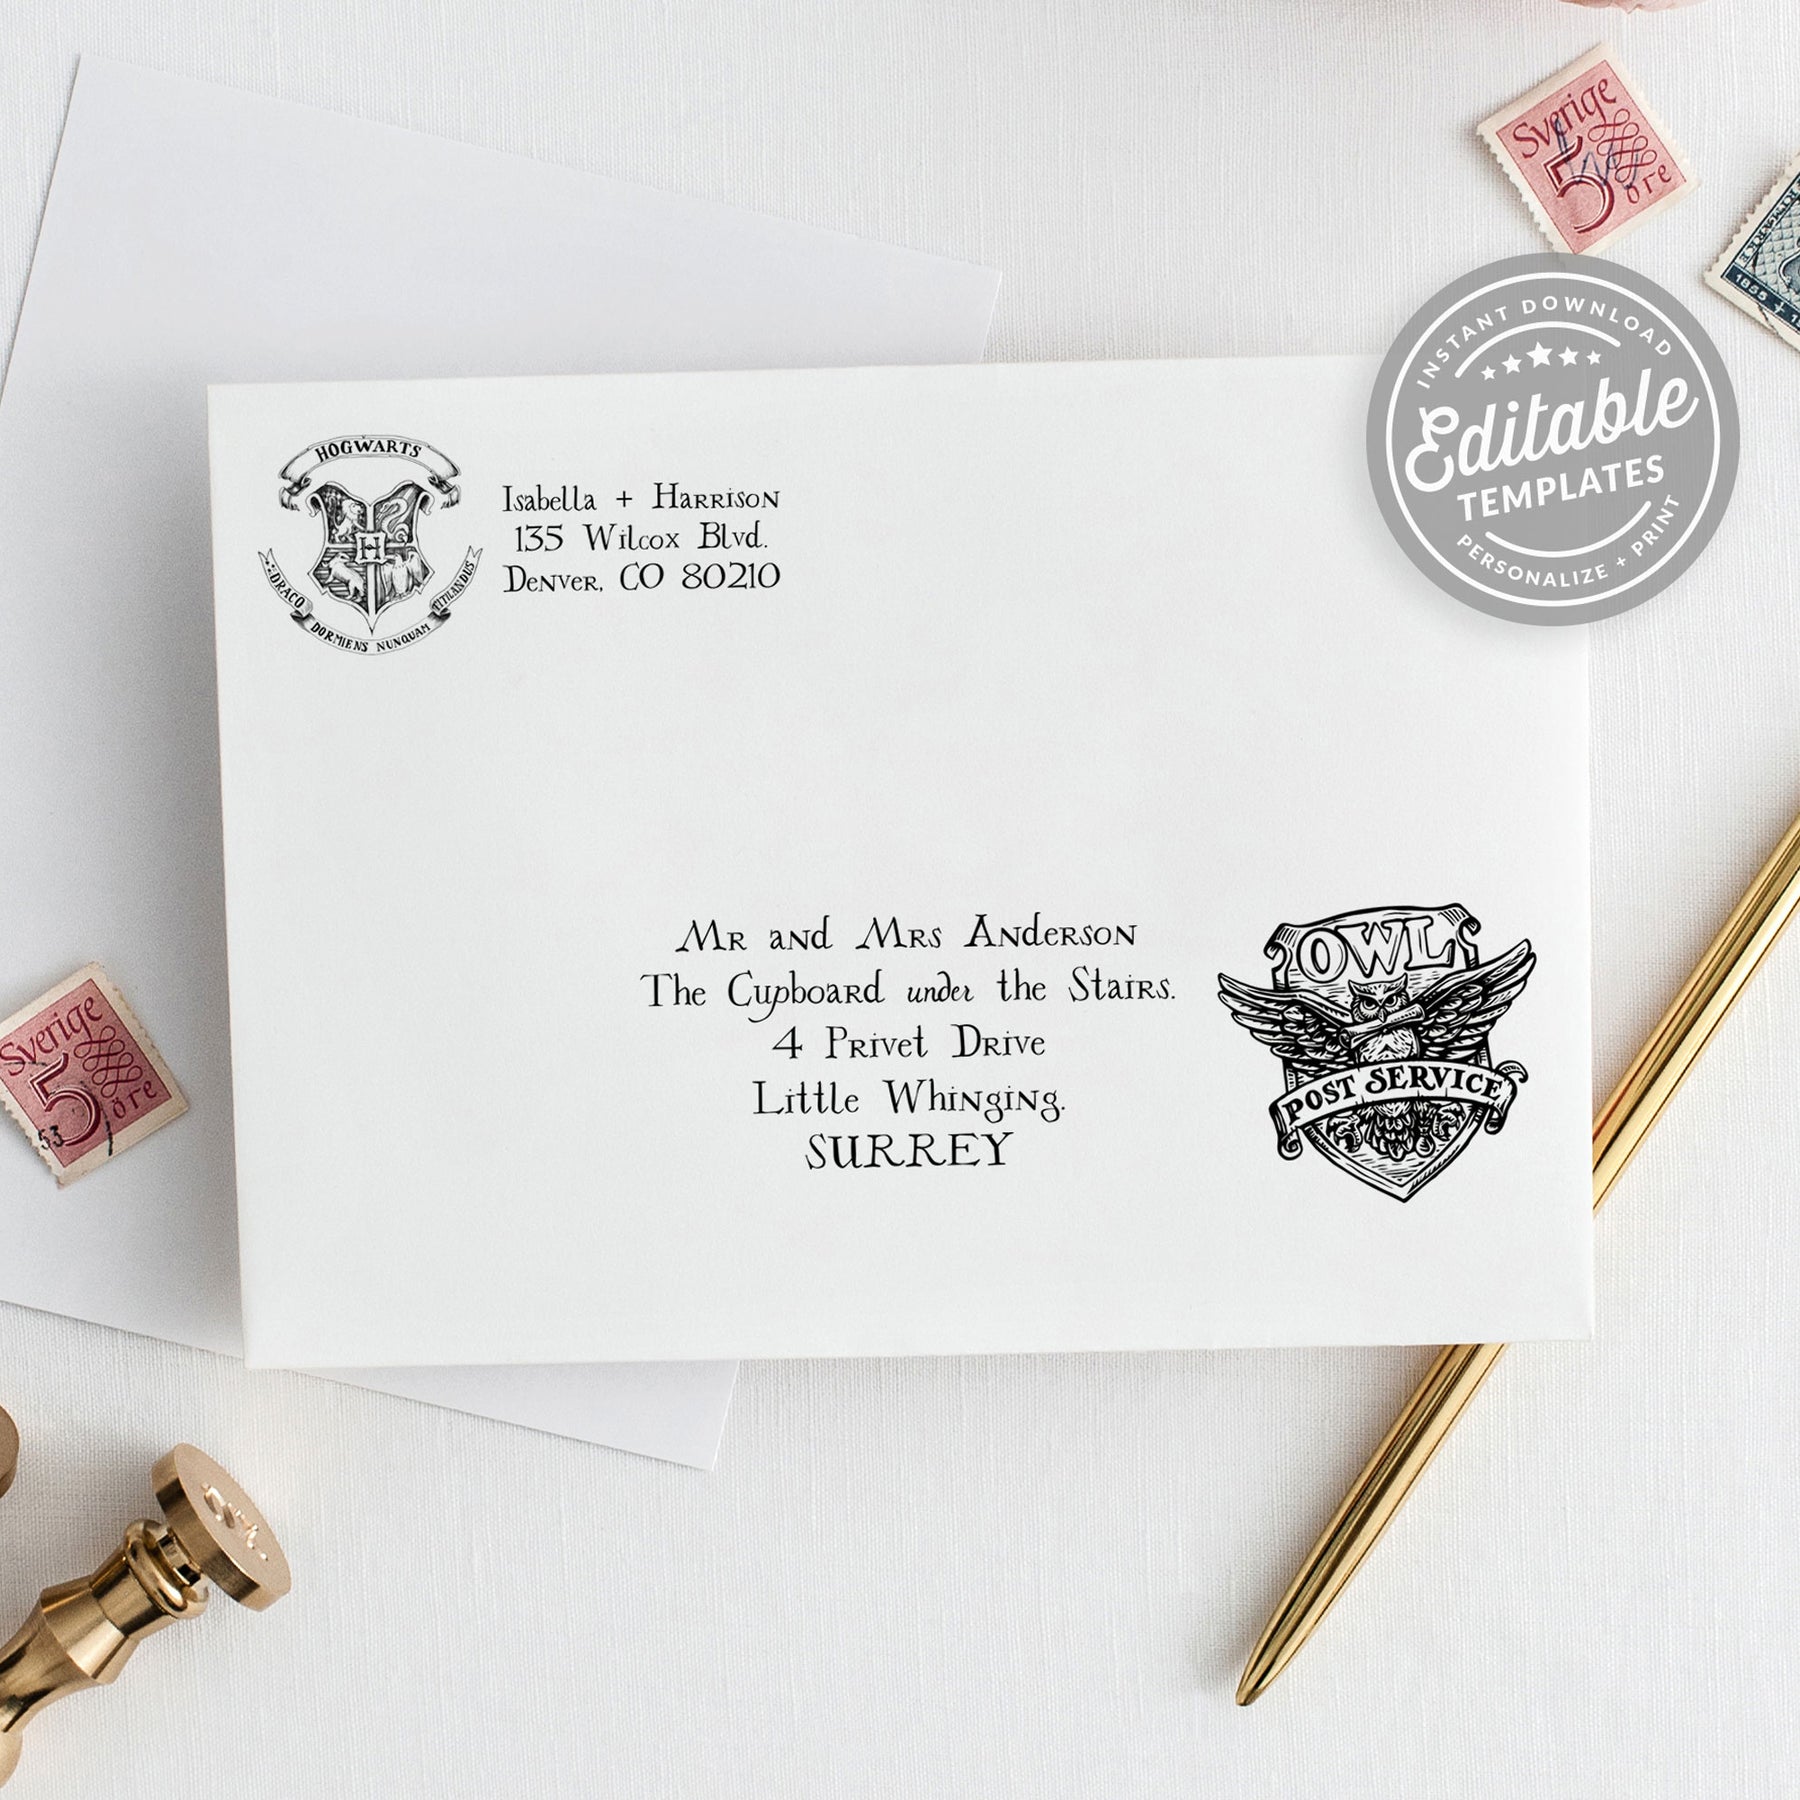 diy-hogwarts-letter-and-harry-potter-envelope-and-hogwarts-top-hogwarts-envelope-printable-roy